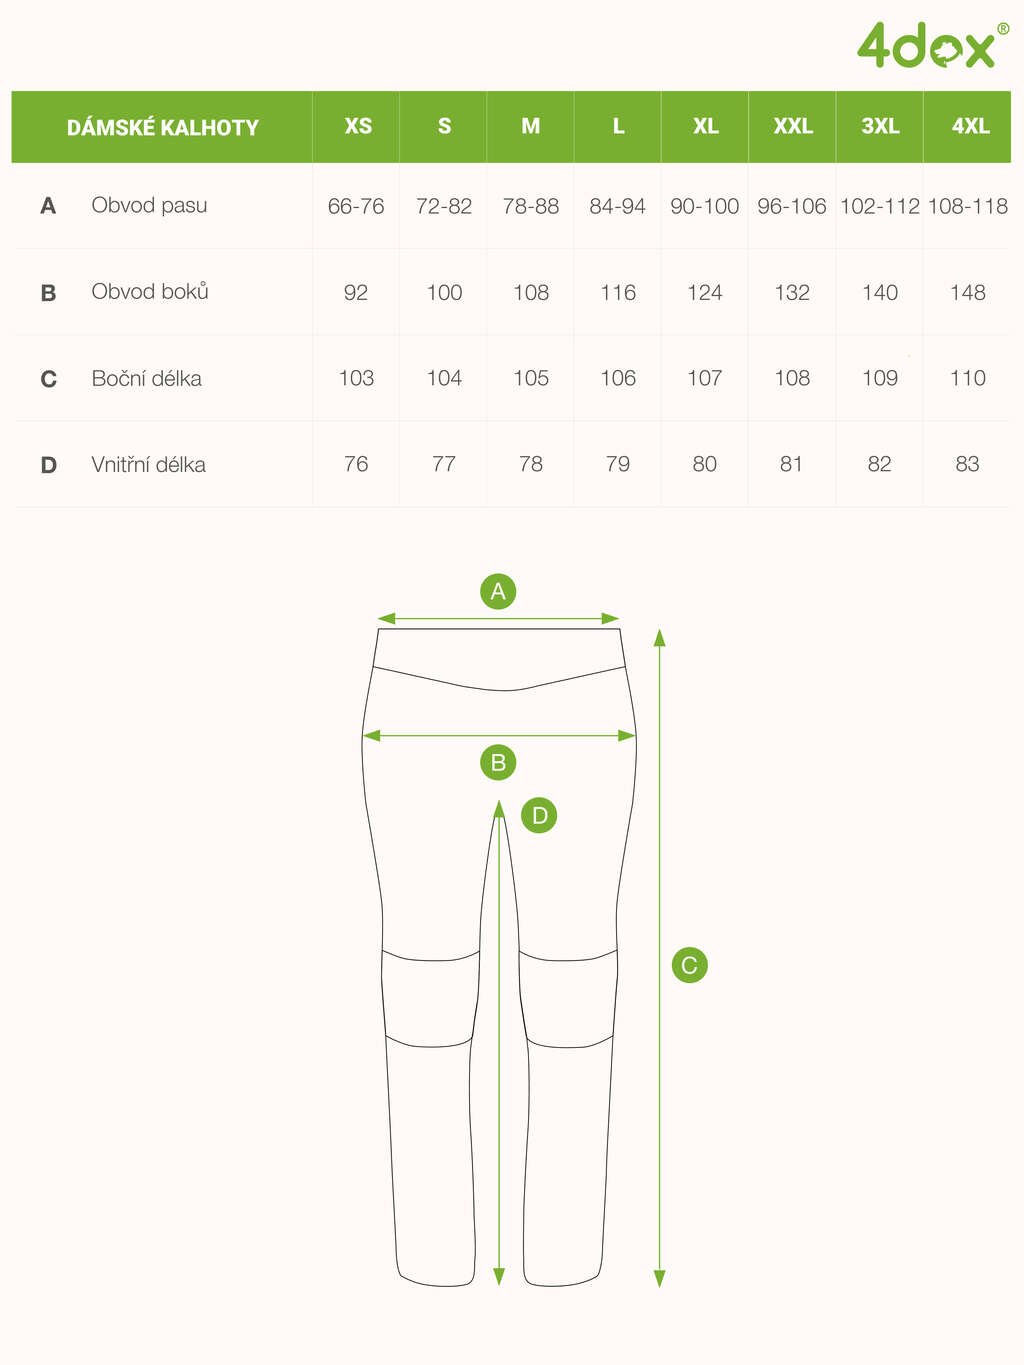 Dámské letní výcvikové kalhoty - petrolejová 4dox